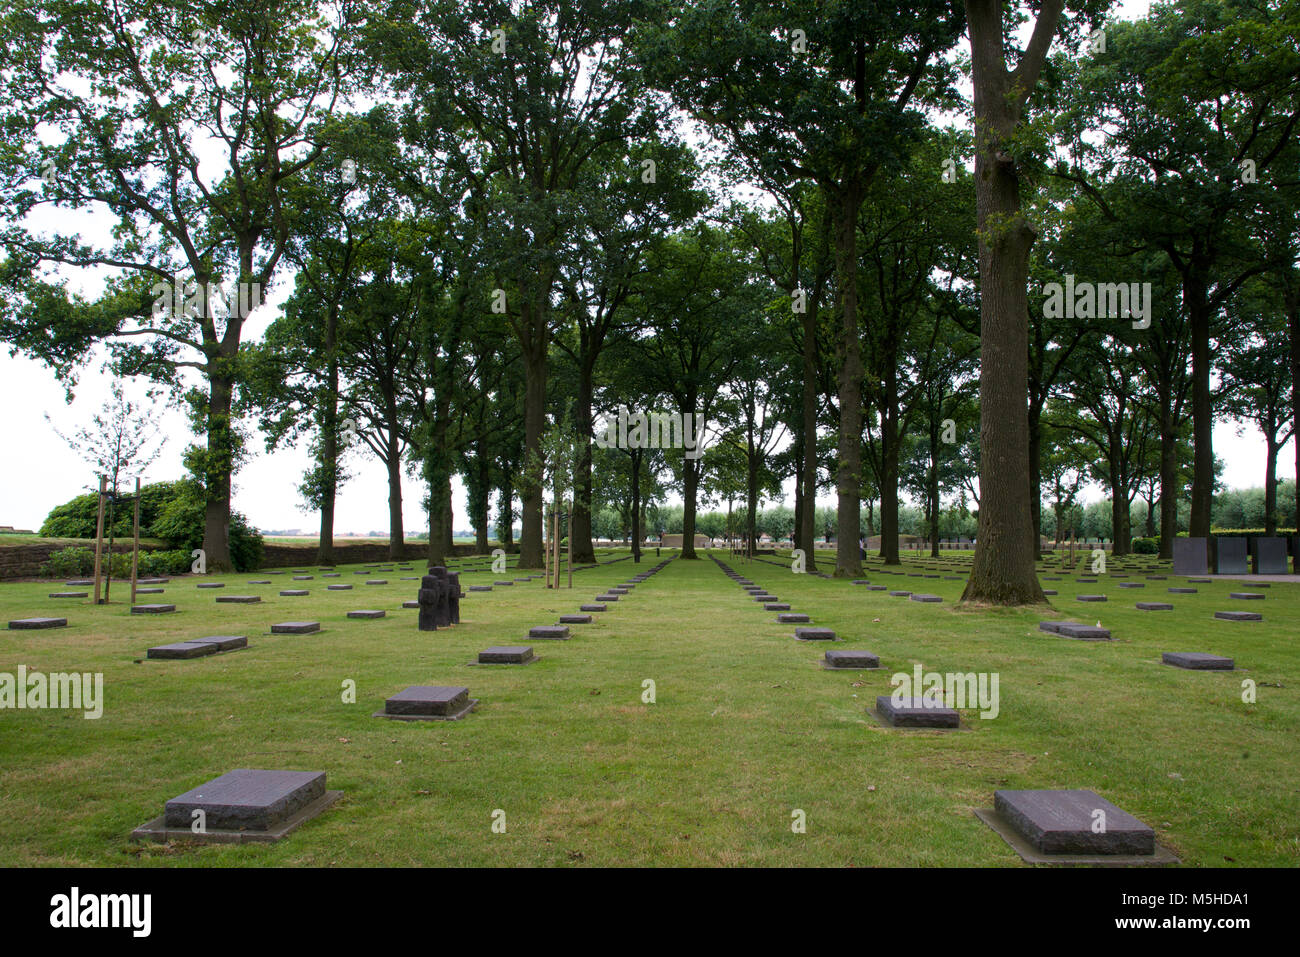 Rows of gravestones af the Langemark German war cemetery Stock Photo